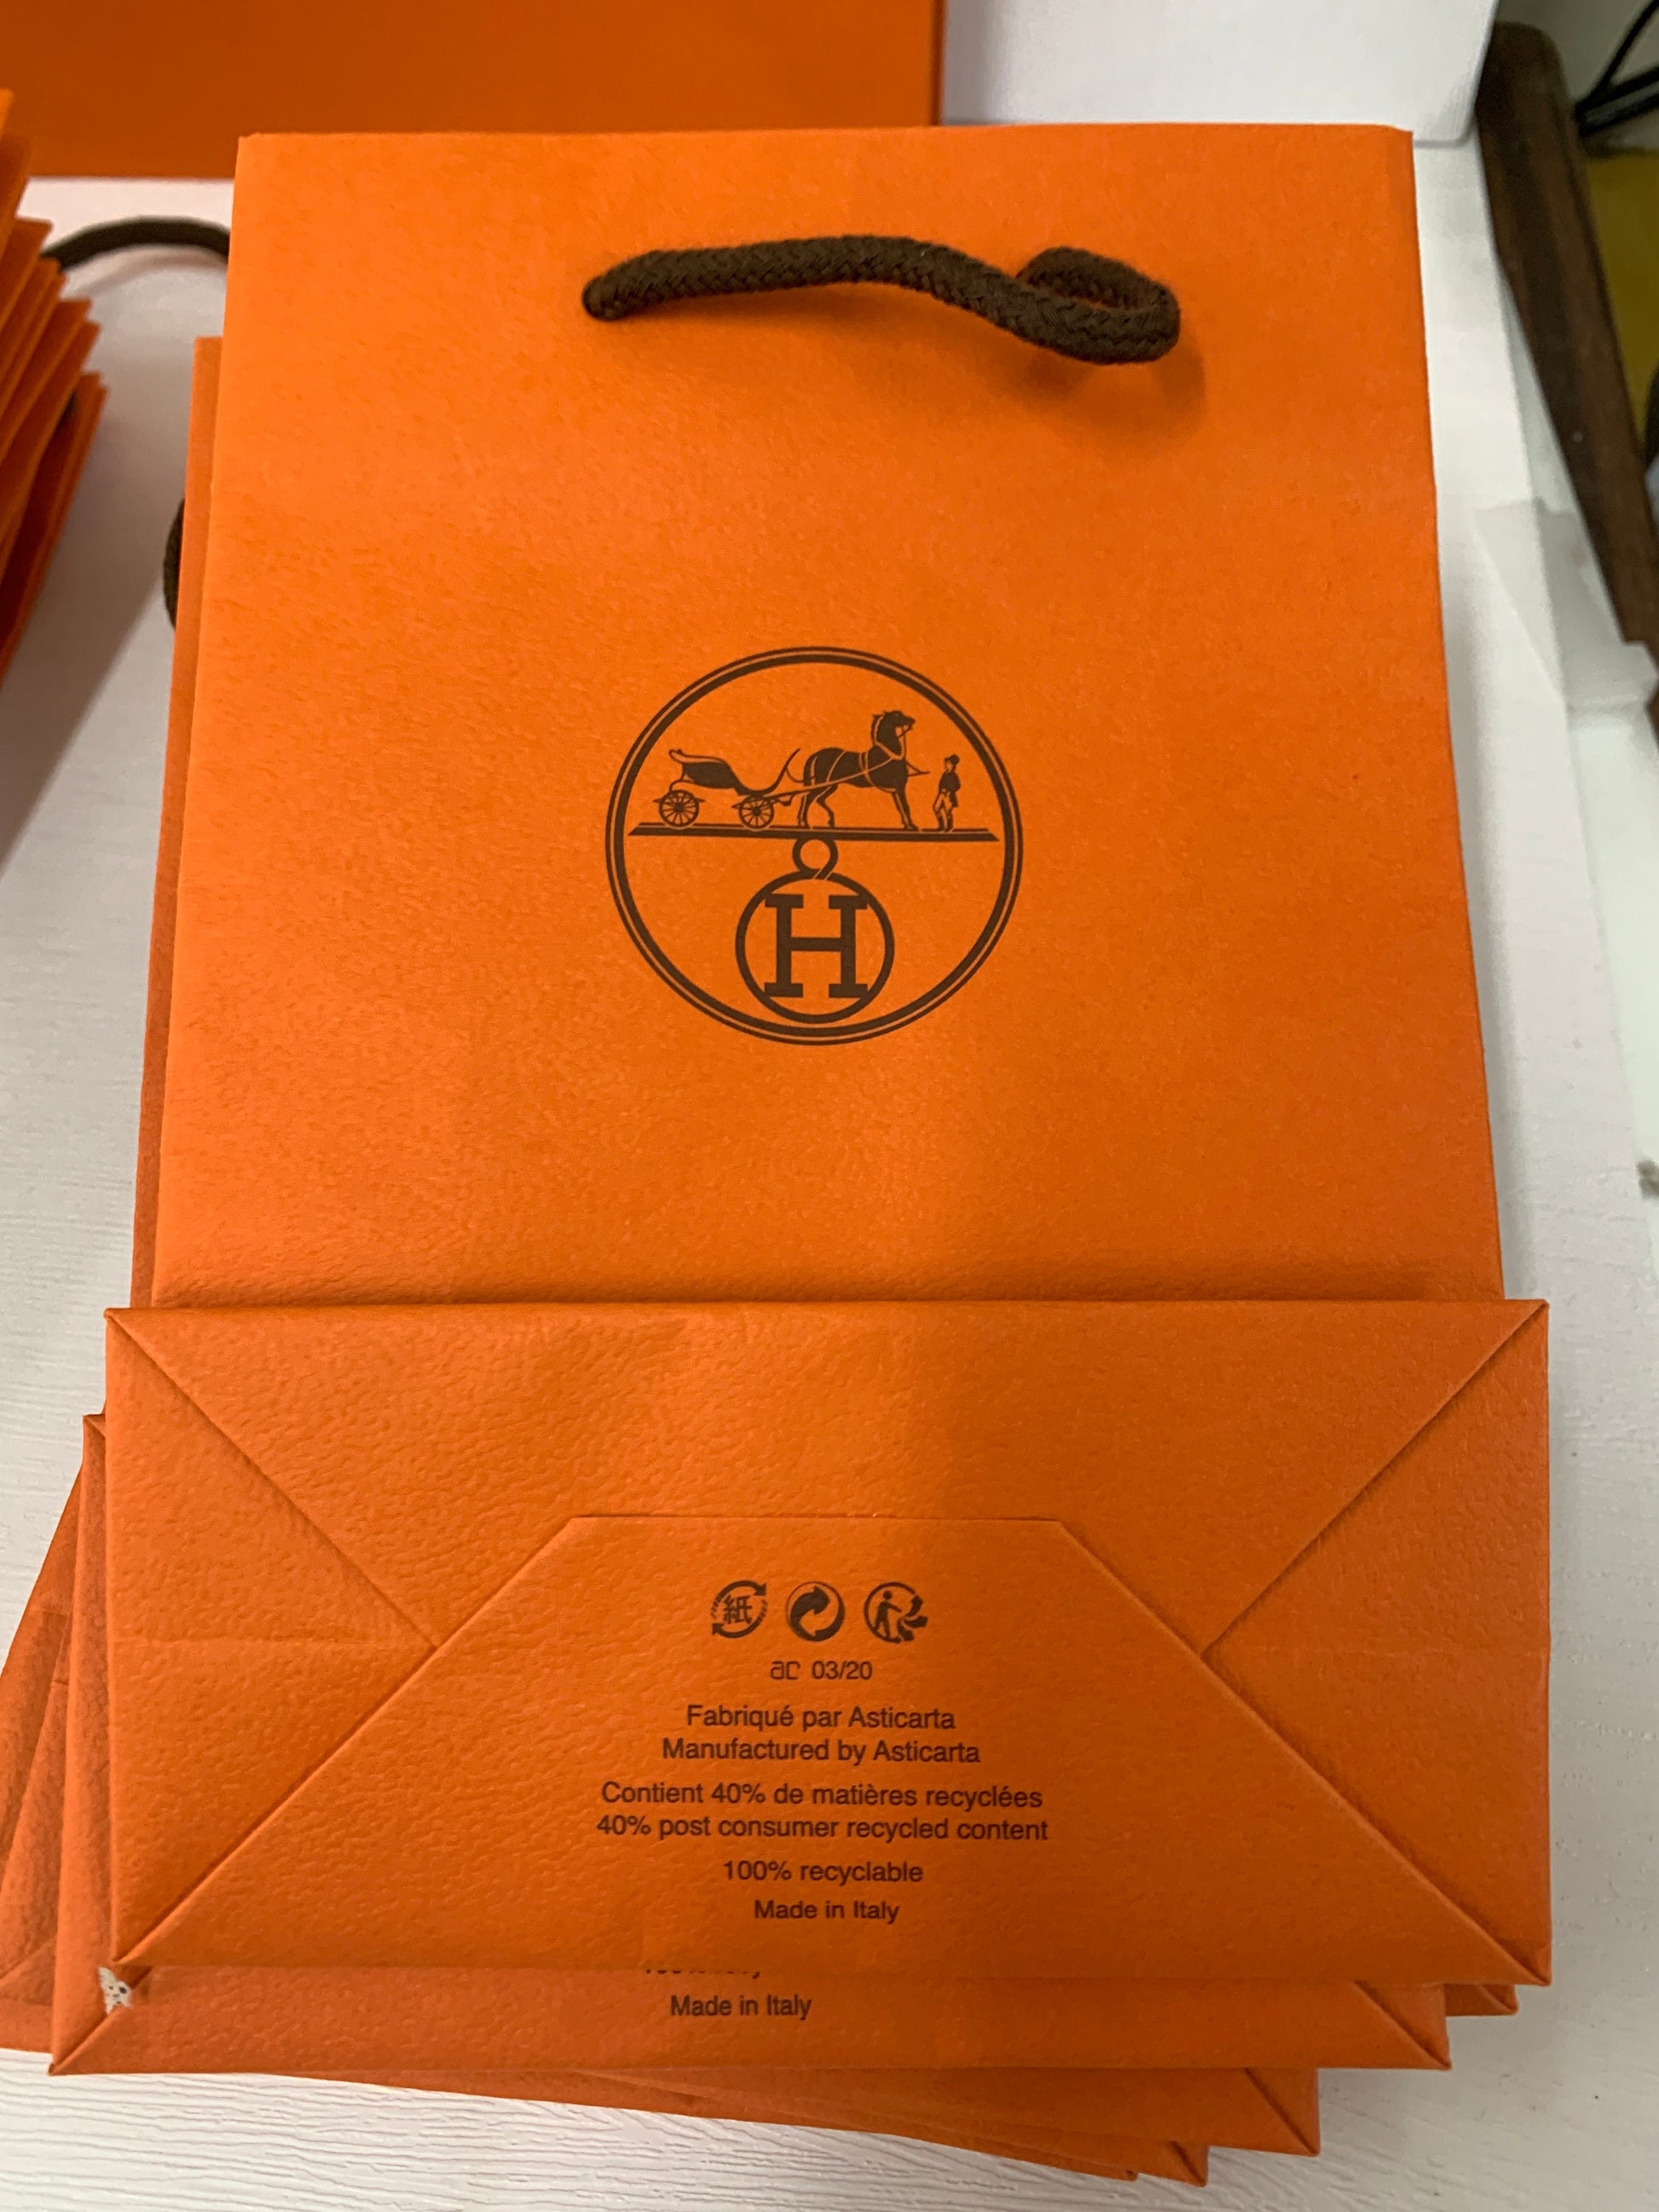 hermes orange paper bag